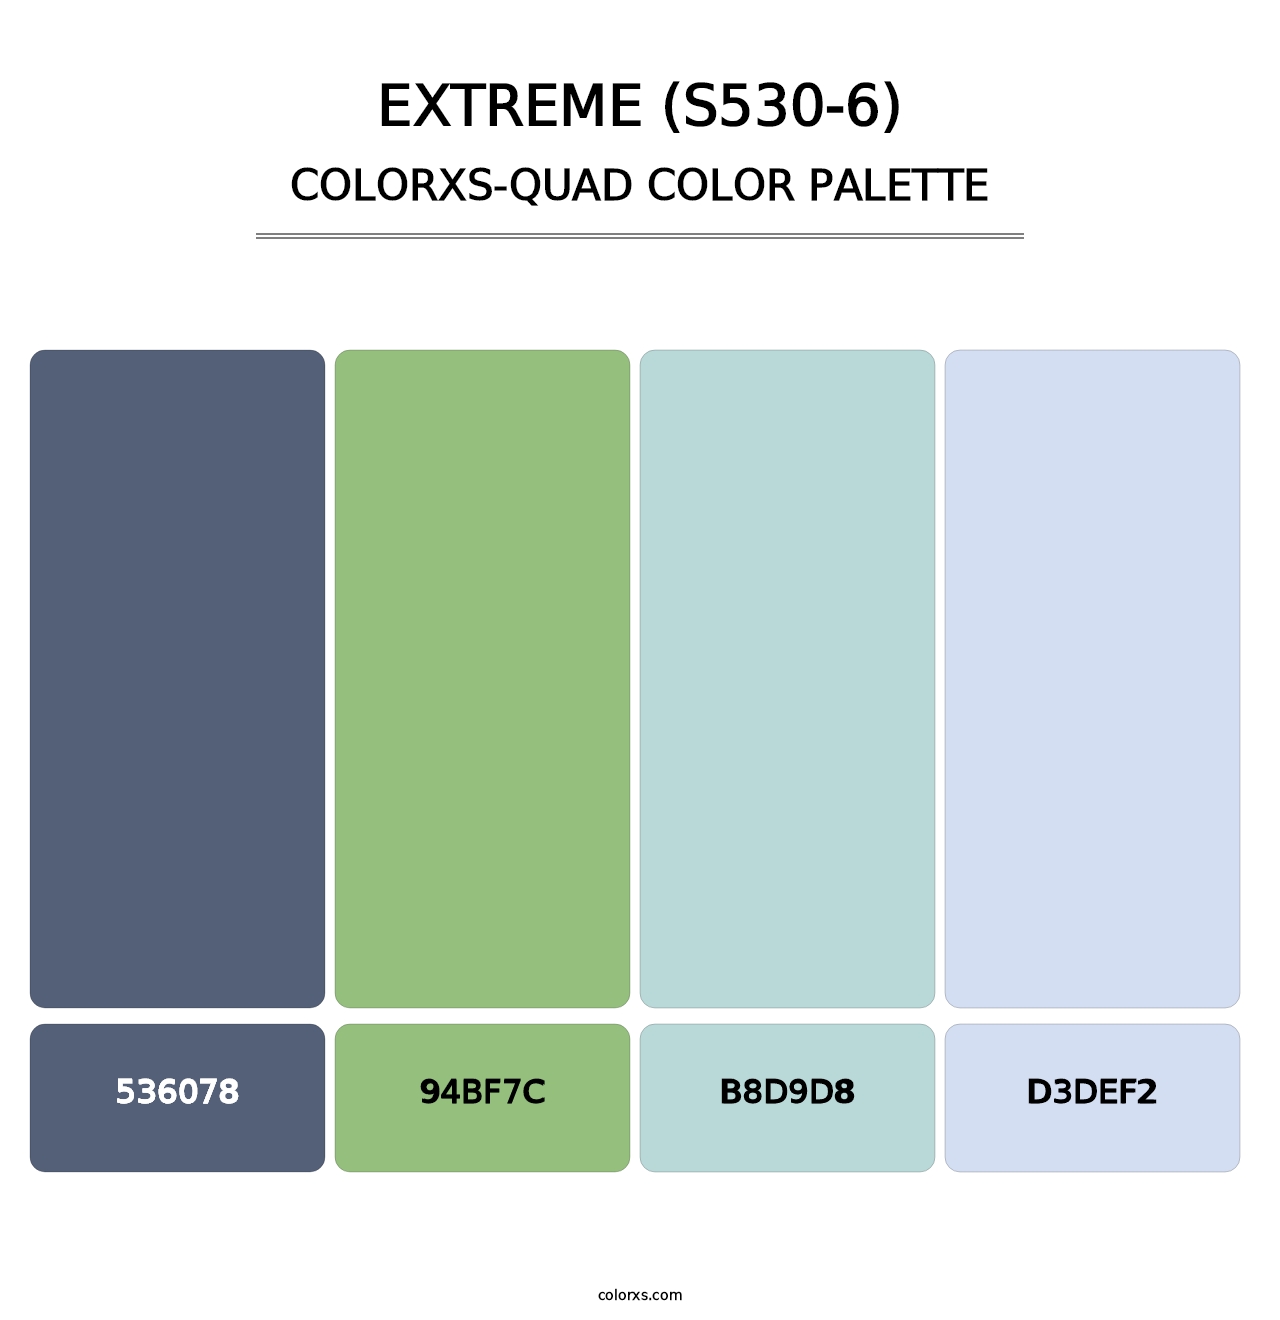 Extreme (S530-6) - Colorxs Quad Palette